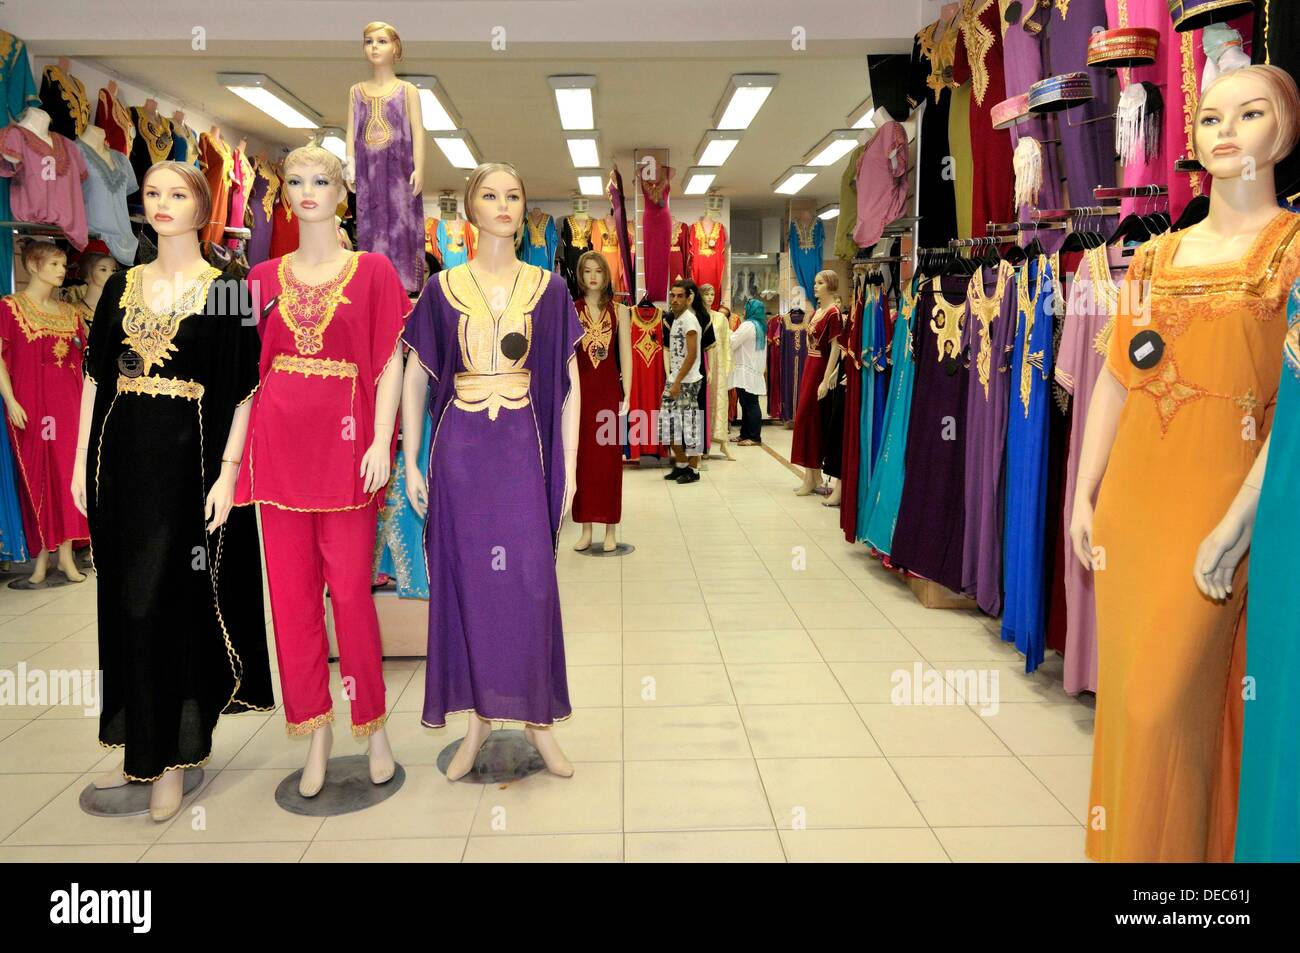 lavitrinetunisie #fashion_dépôtvente #dépôt_vente #Tunis #outlet #tunisia  tel 98444111 #chanel